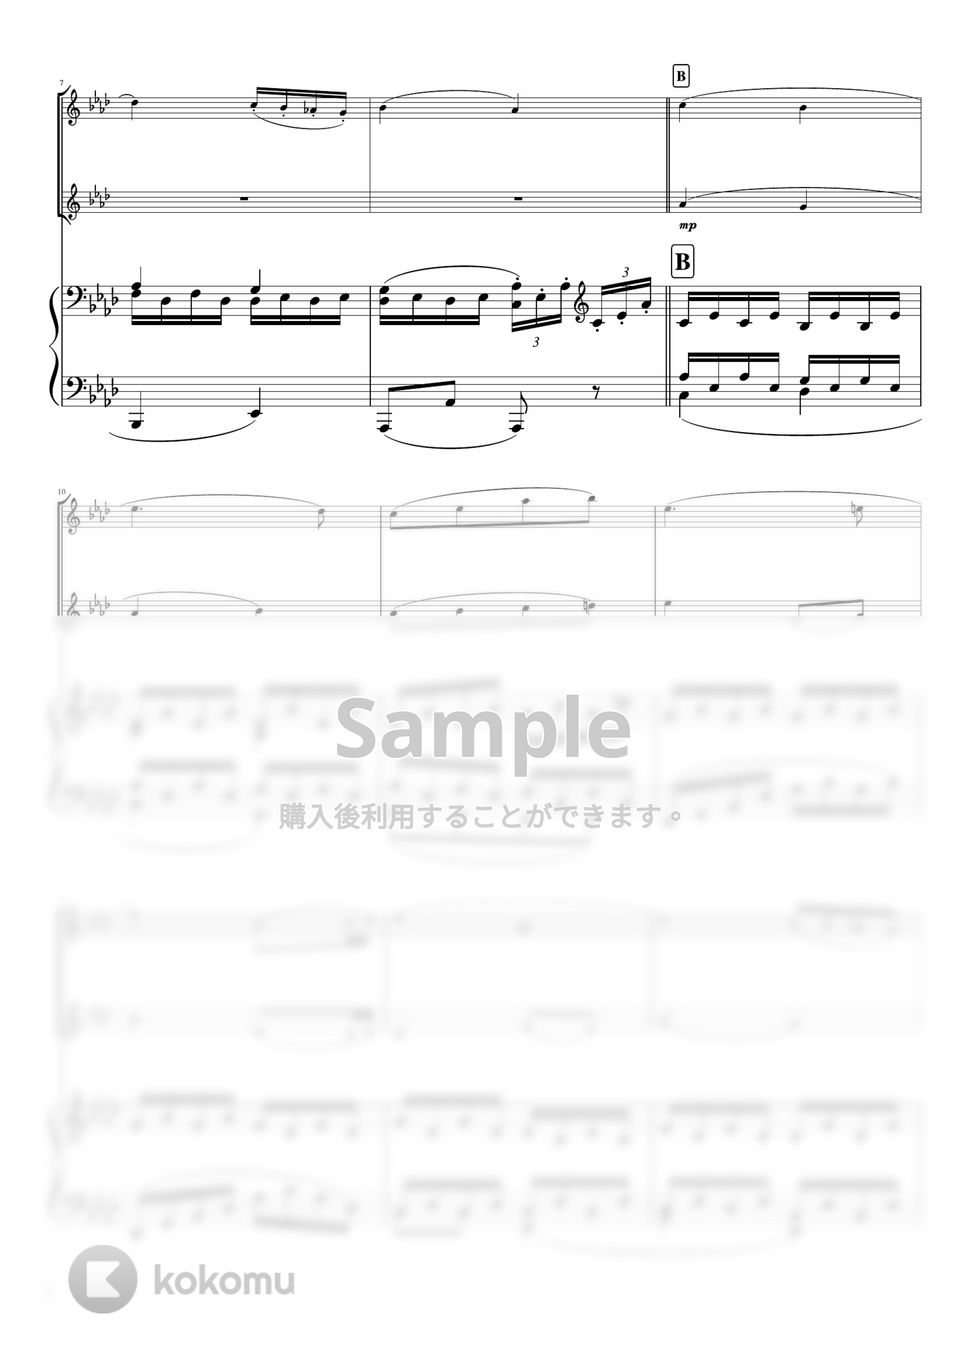 ベートーヴェン - ピアノソナタ第8番第2楽章「悲愴」 (ピアノトリオ/vn duo) by pfkaori